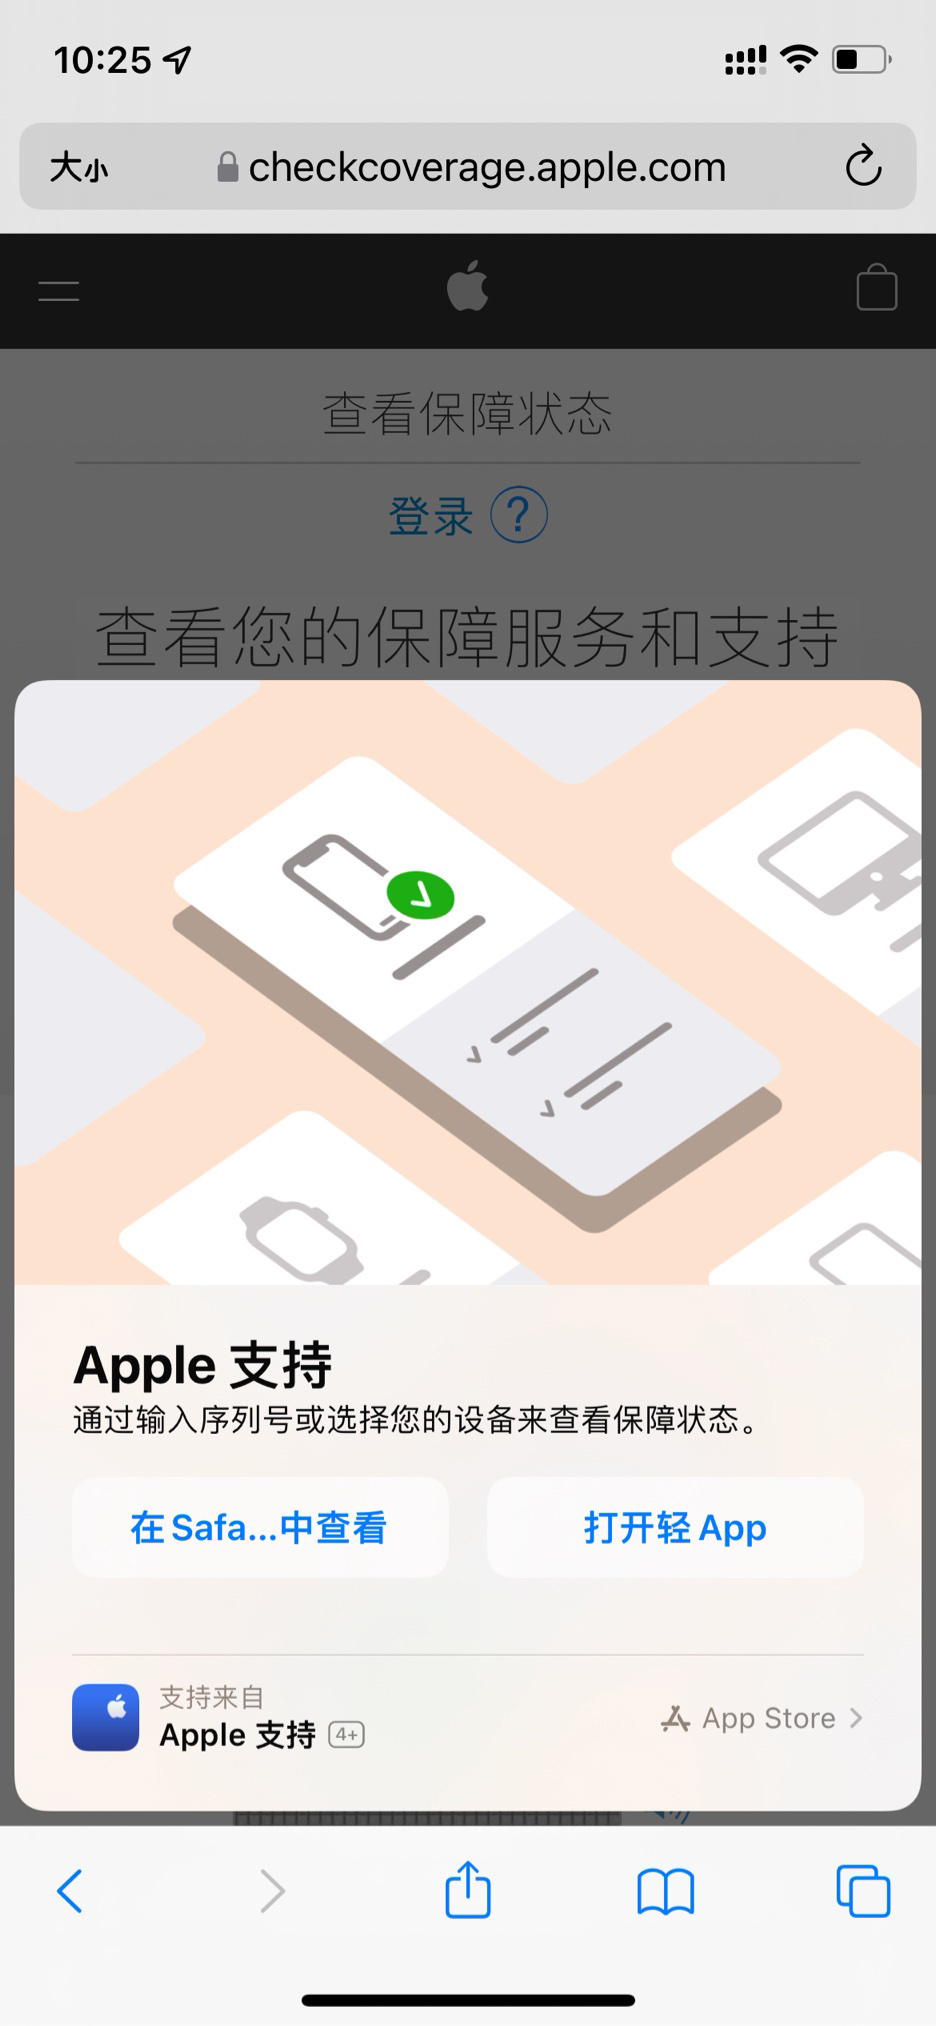 Apple支持现已推出App Clips 苹果用户快速查询保修期限-iphone保修时间可以看真伪吗